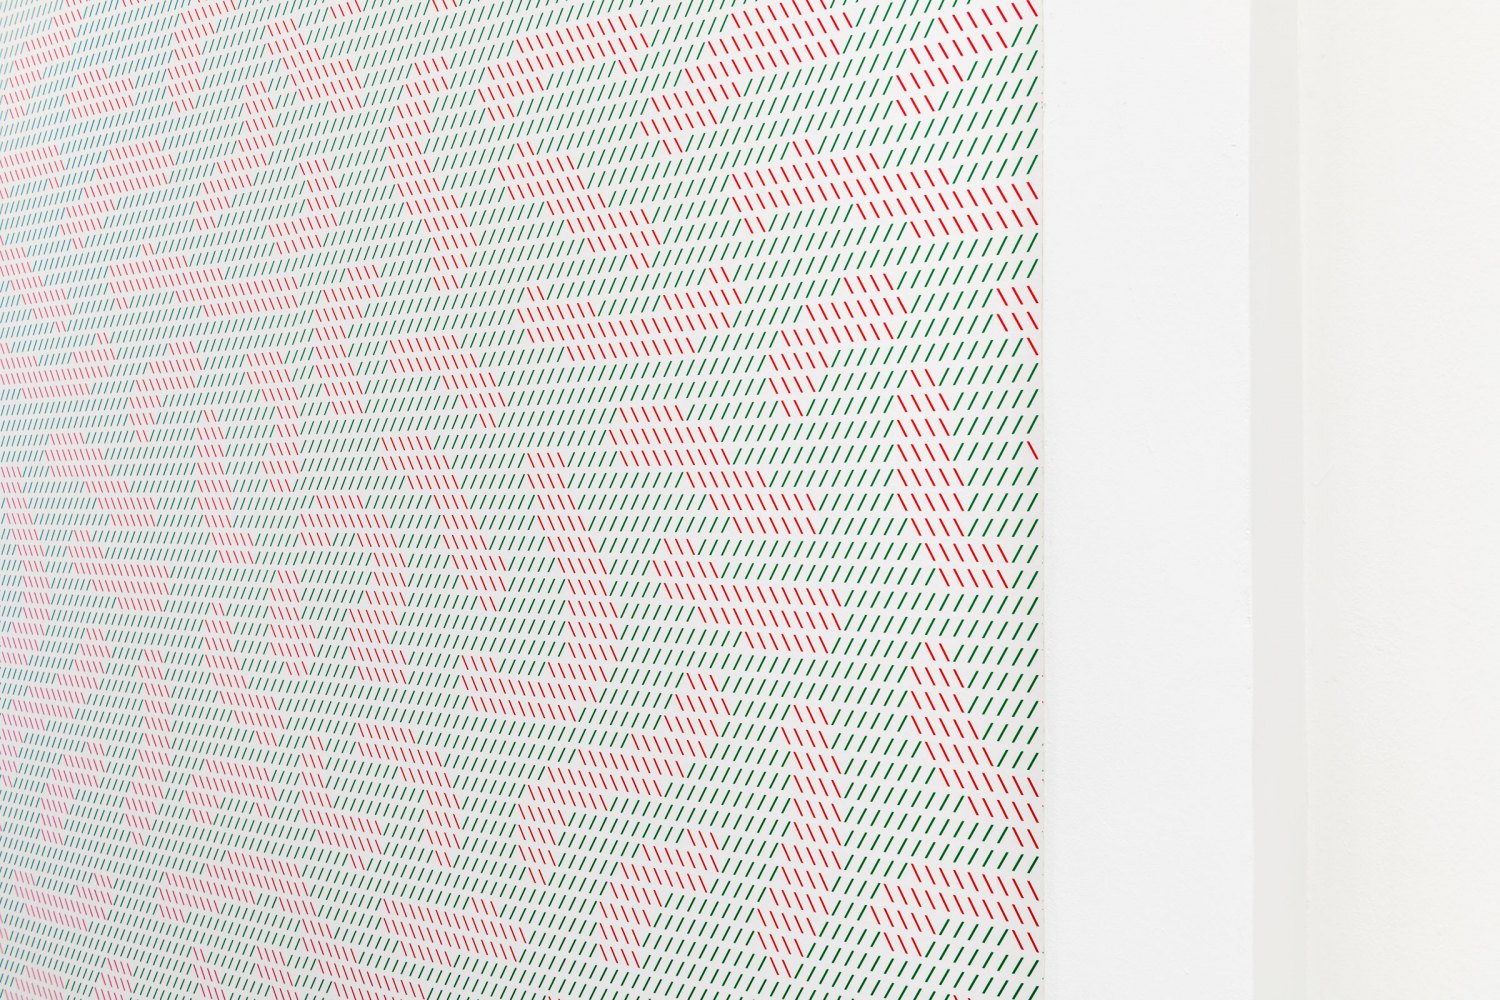 Installation view, Florian Hecker, Templextures, Galerie Neu, Berlin, 2022